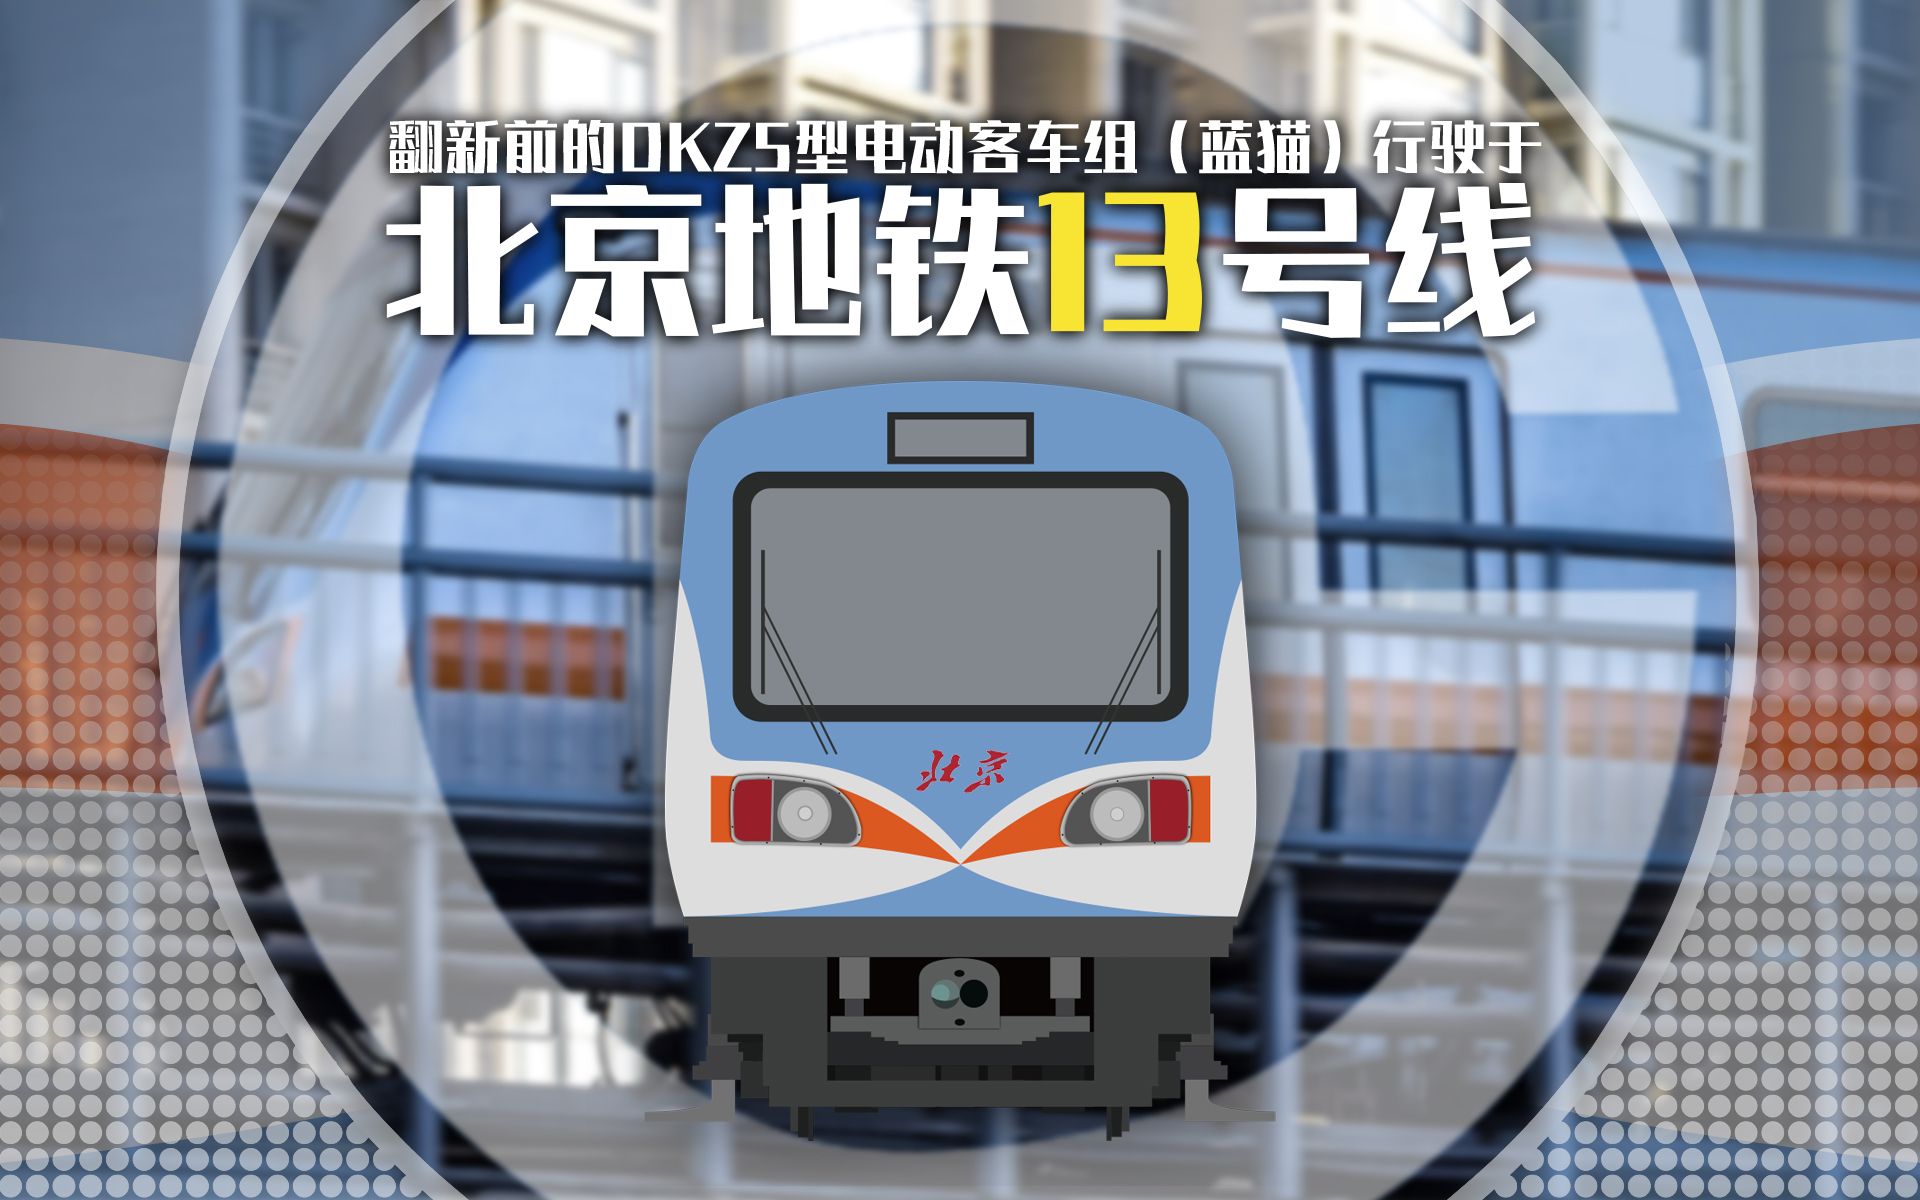 北京地铁翻新前的dkz5型电动客车组蓝猫行驶于北京地铁13号线的视频